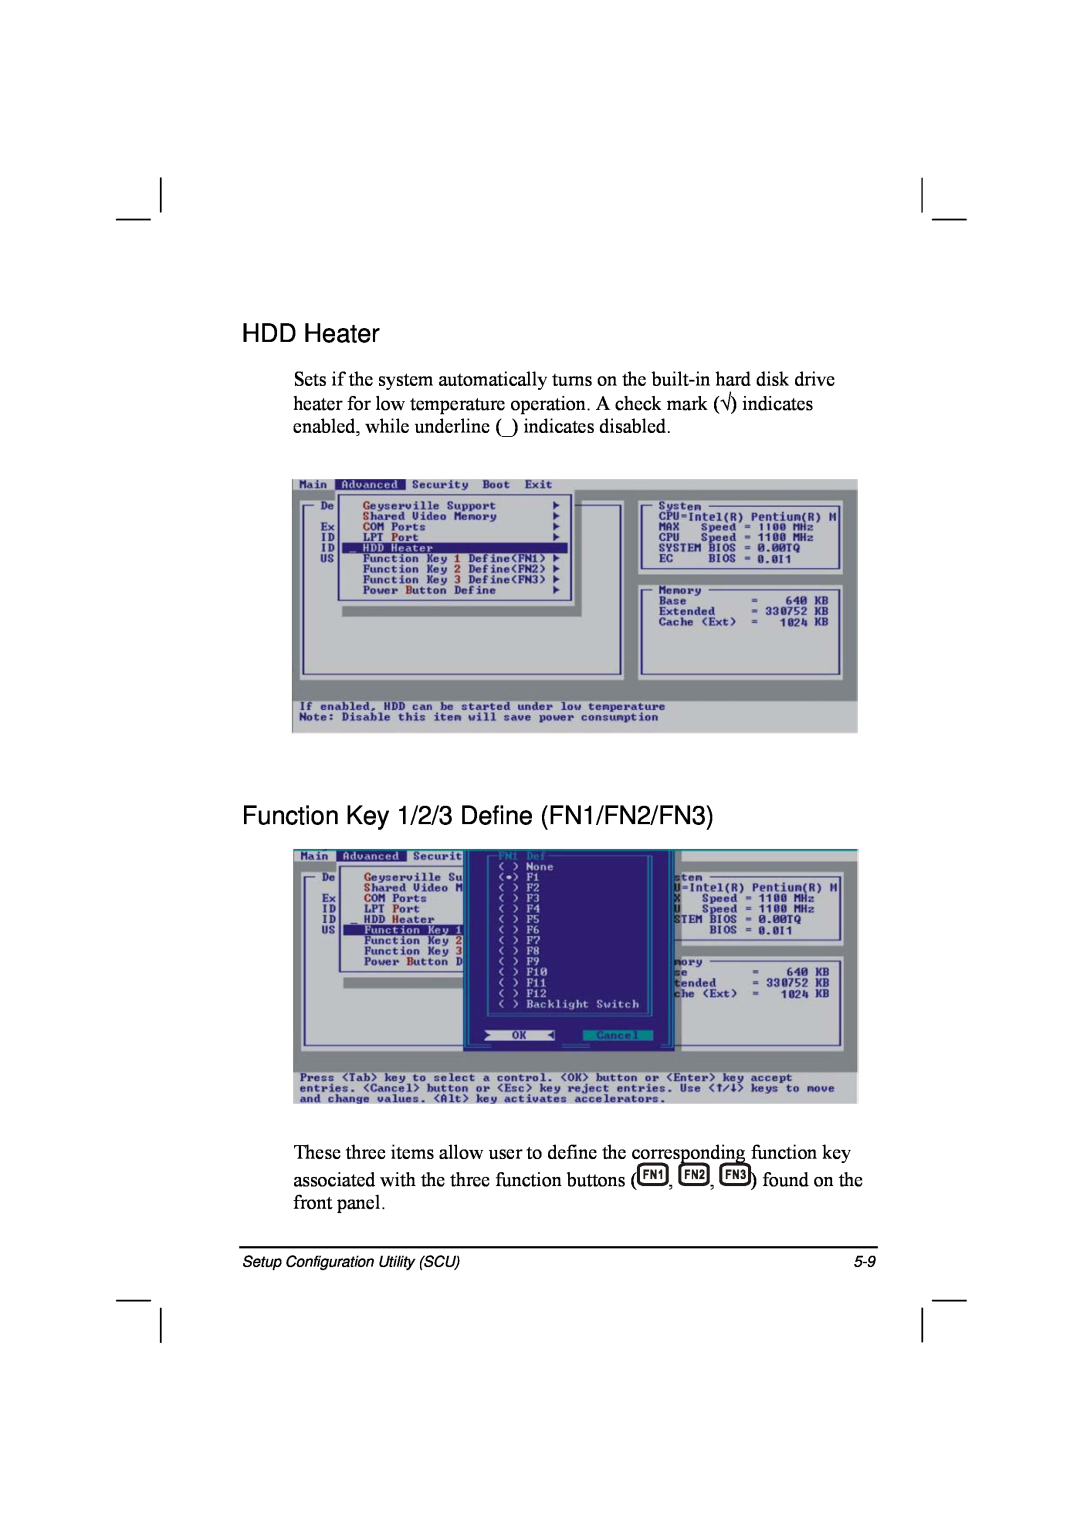 TAG 20 Series manual HDD Heater, Function Key 1/2/3 Define FN1/FN2/FN3 